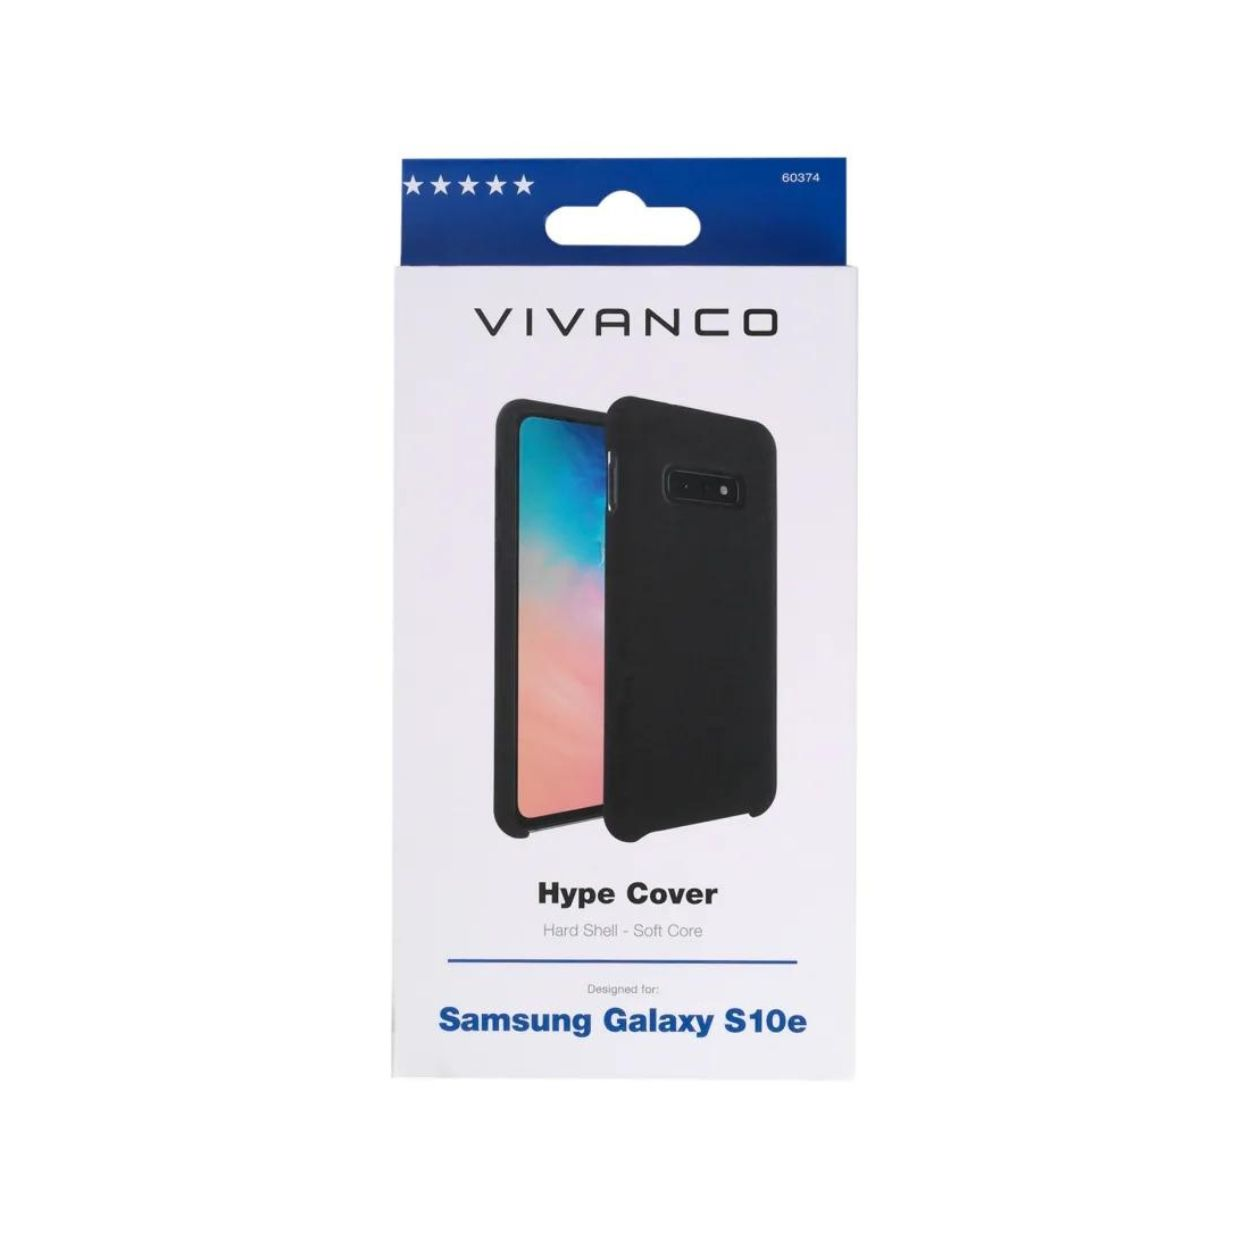 Backcover, Samsung, VIVANCO Schwarz 60374, S10e, Galaxy